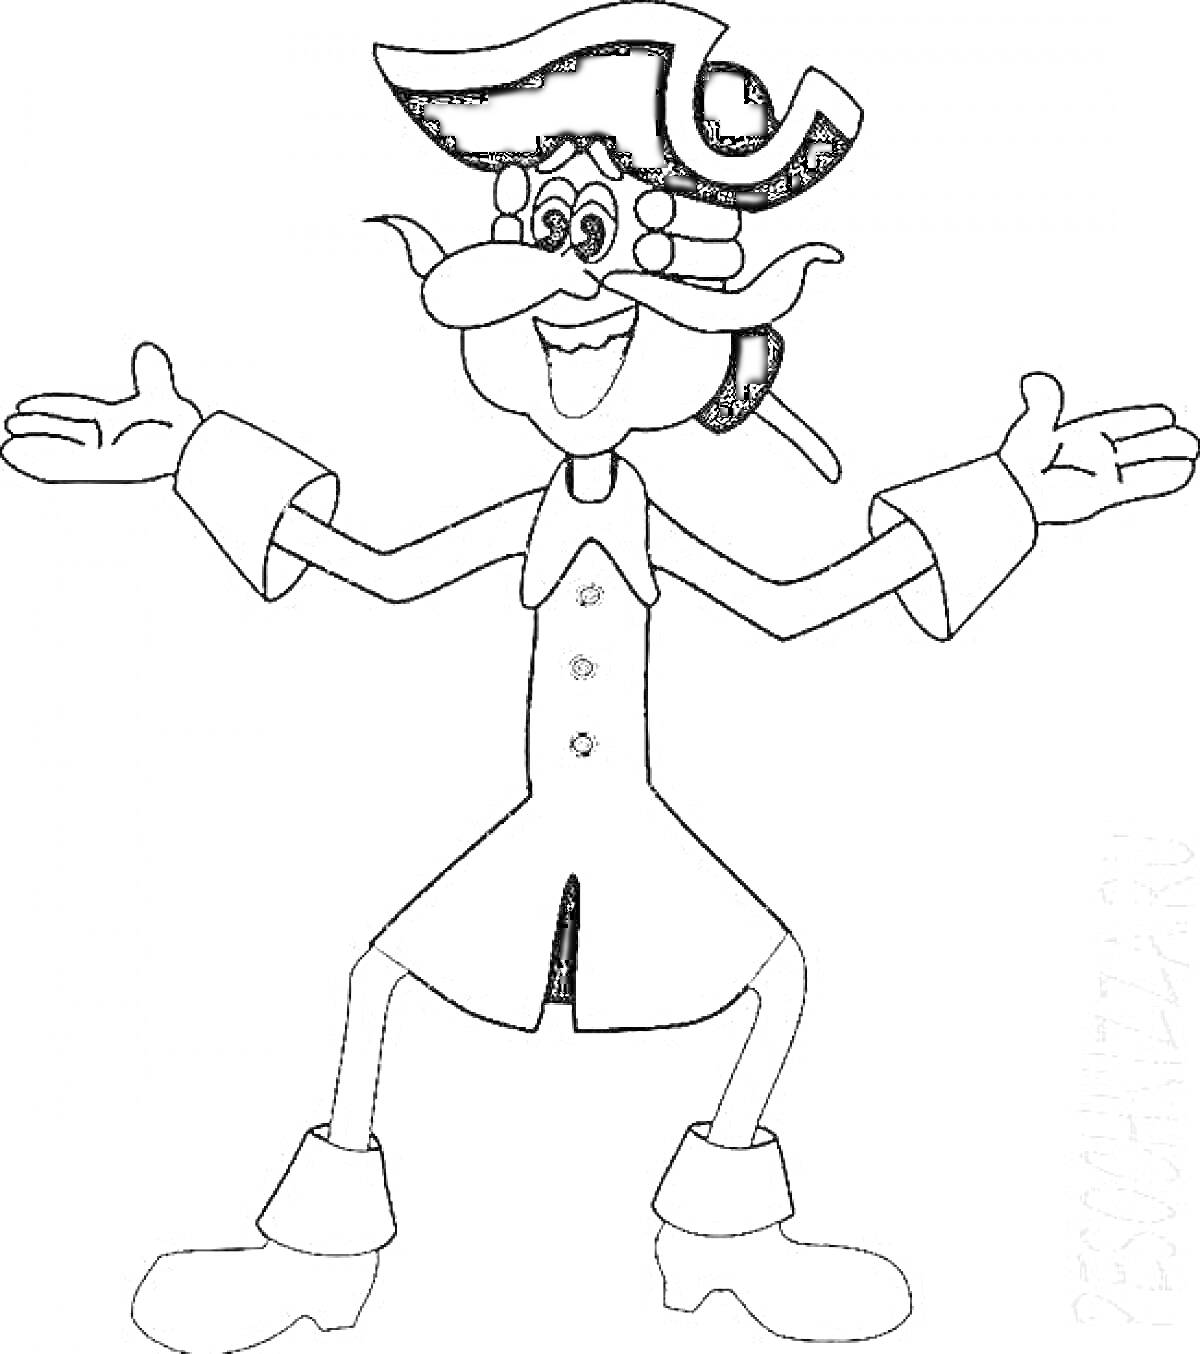 Раскраска Цветная раскраска с персонажем в костюме с треуголкой, расставившим руки в стороны